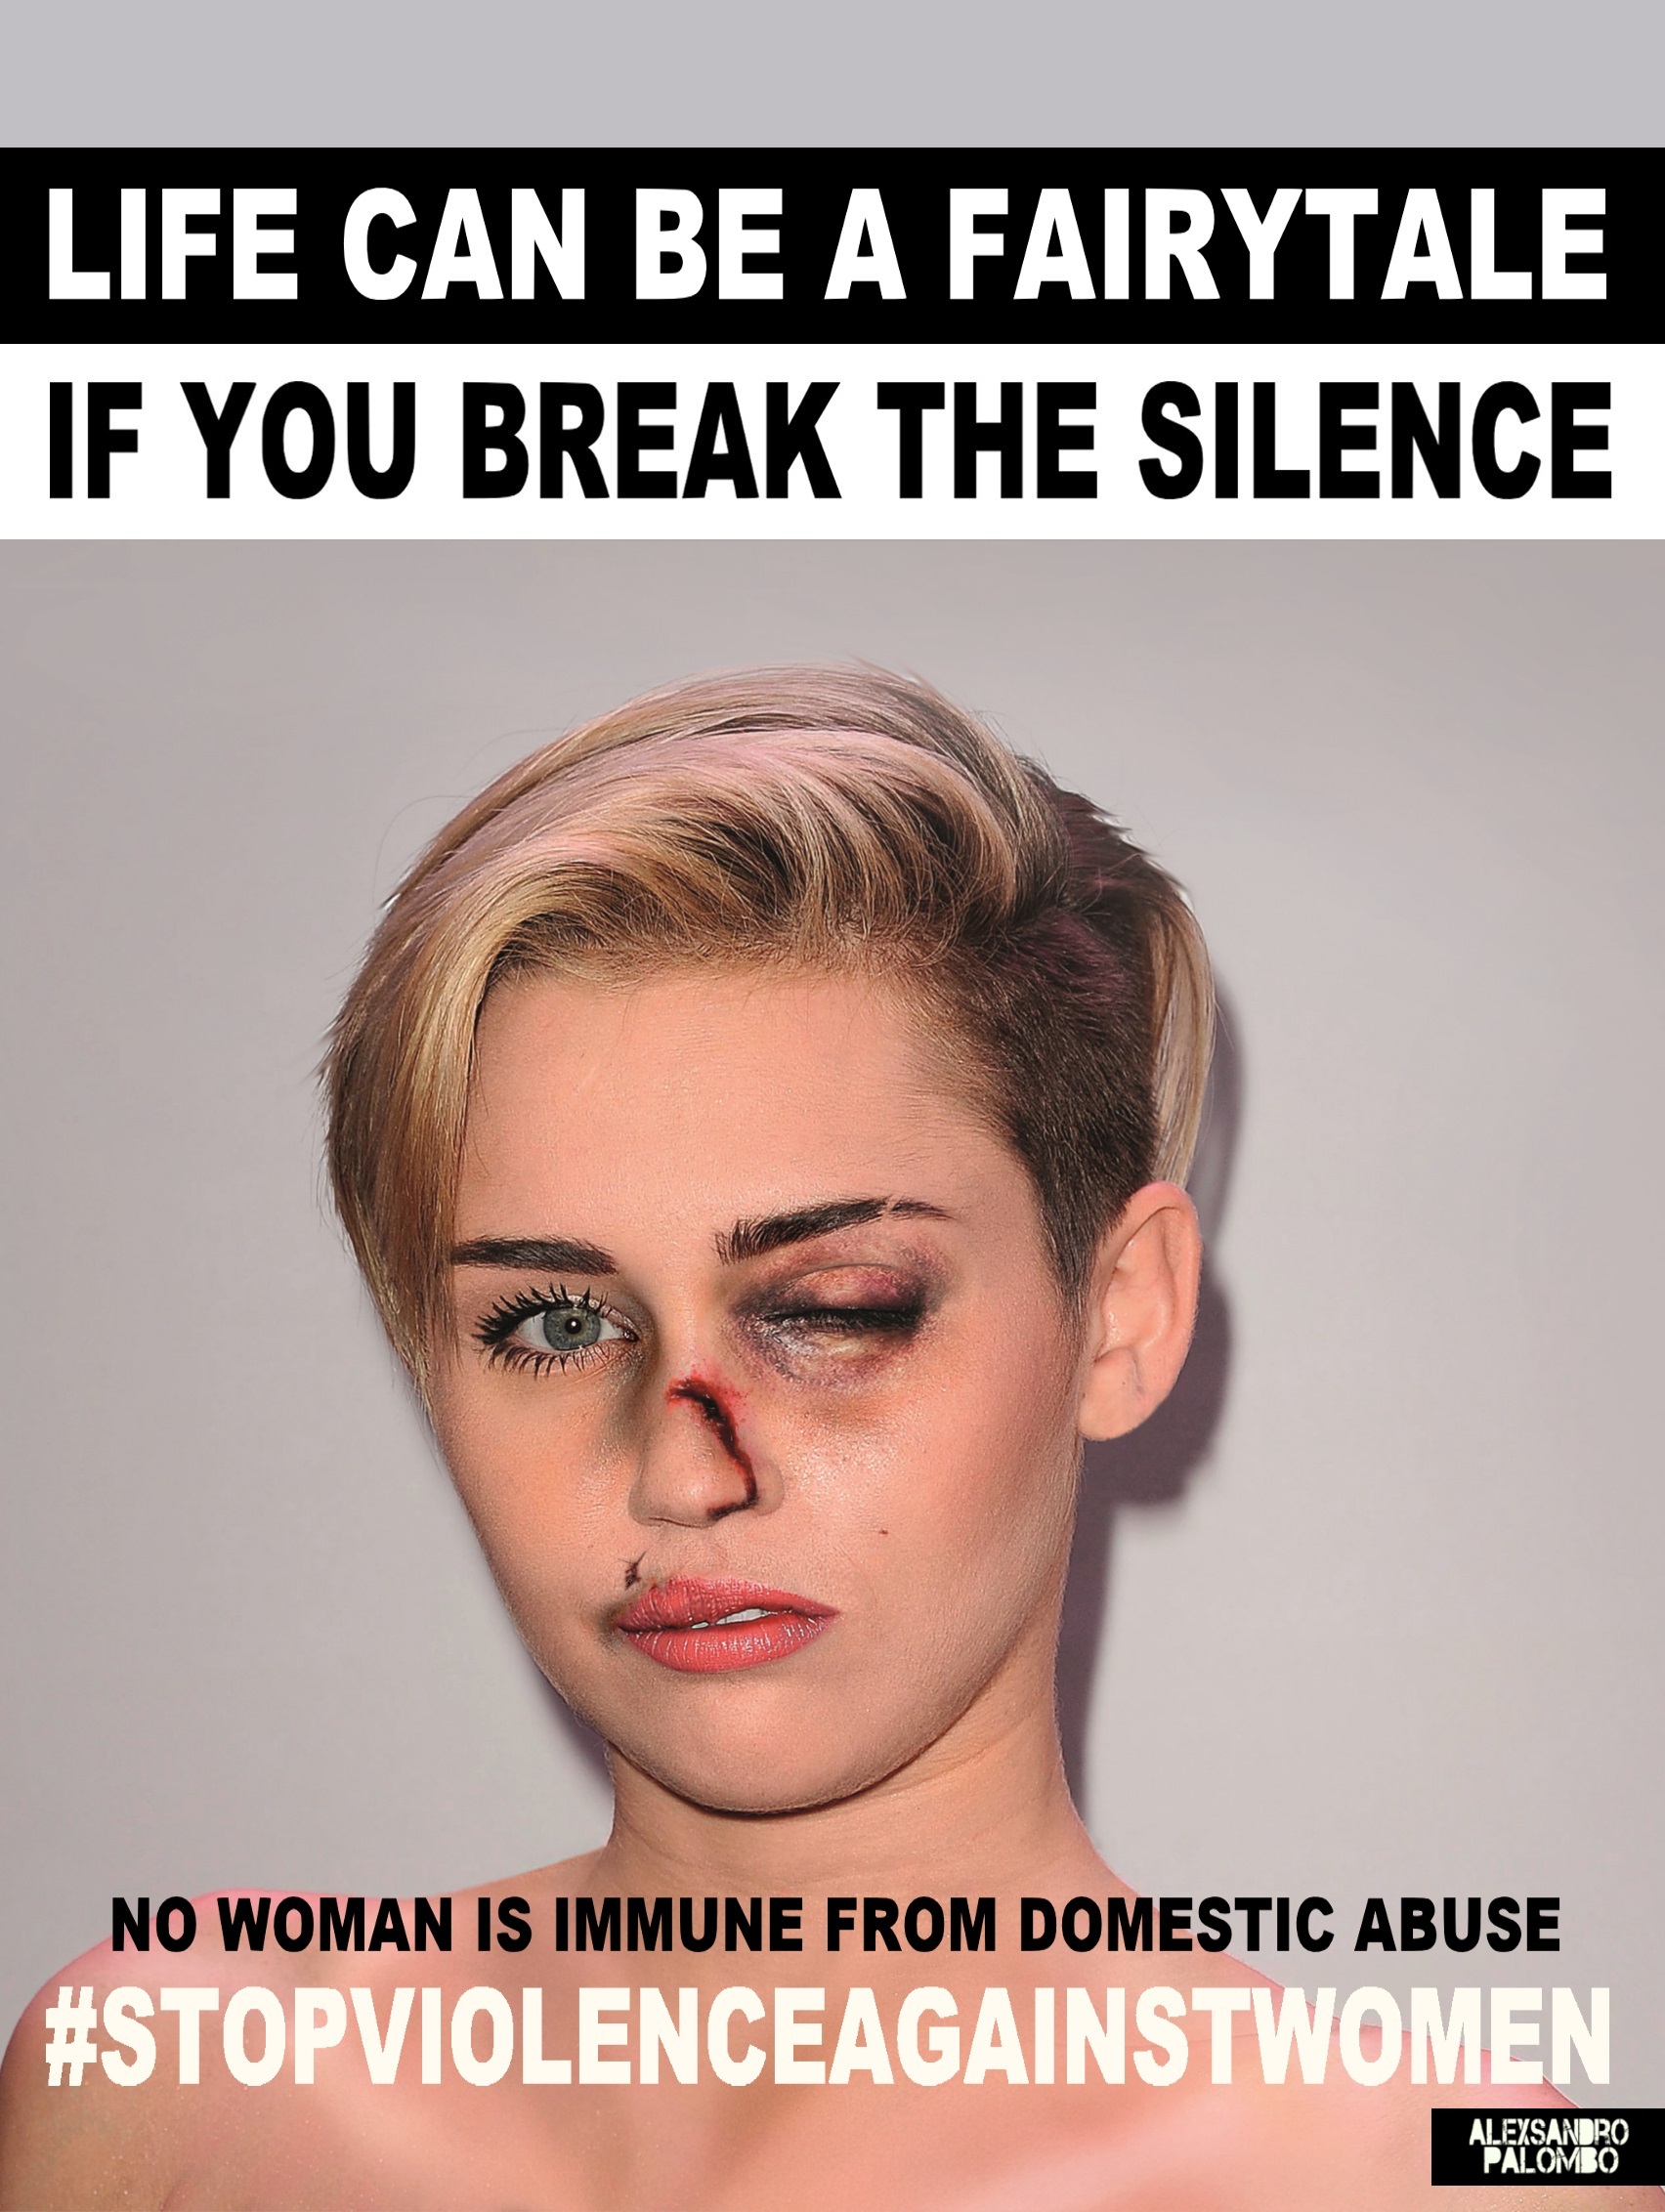 Giornata mondiale contro la violenza sulle donne 2015: da Kim Kardashian a Miley Cyrus, le star come vittime di violenza domestica